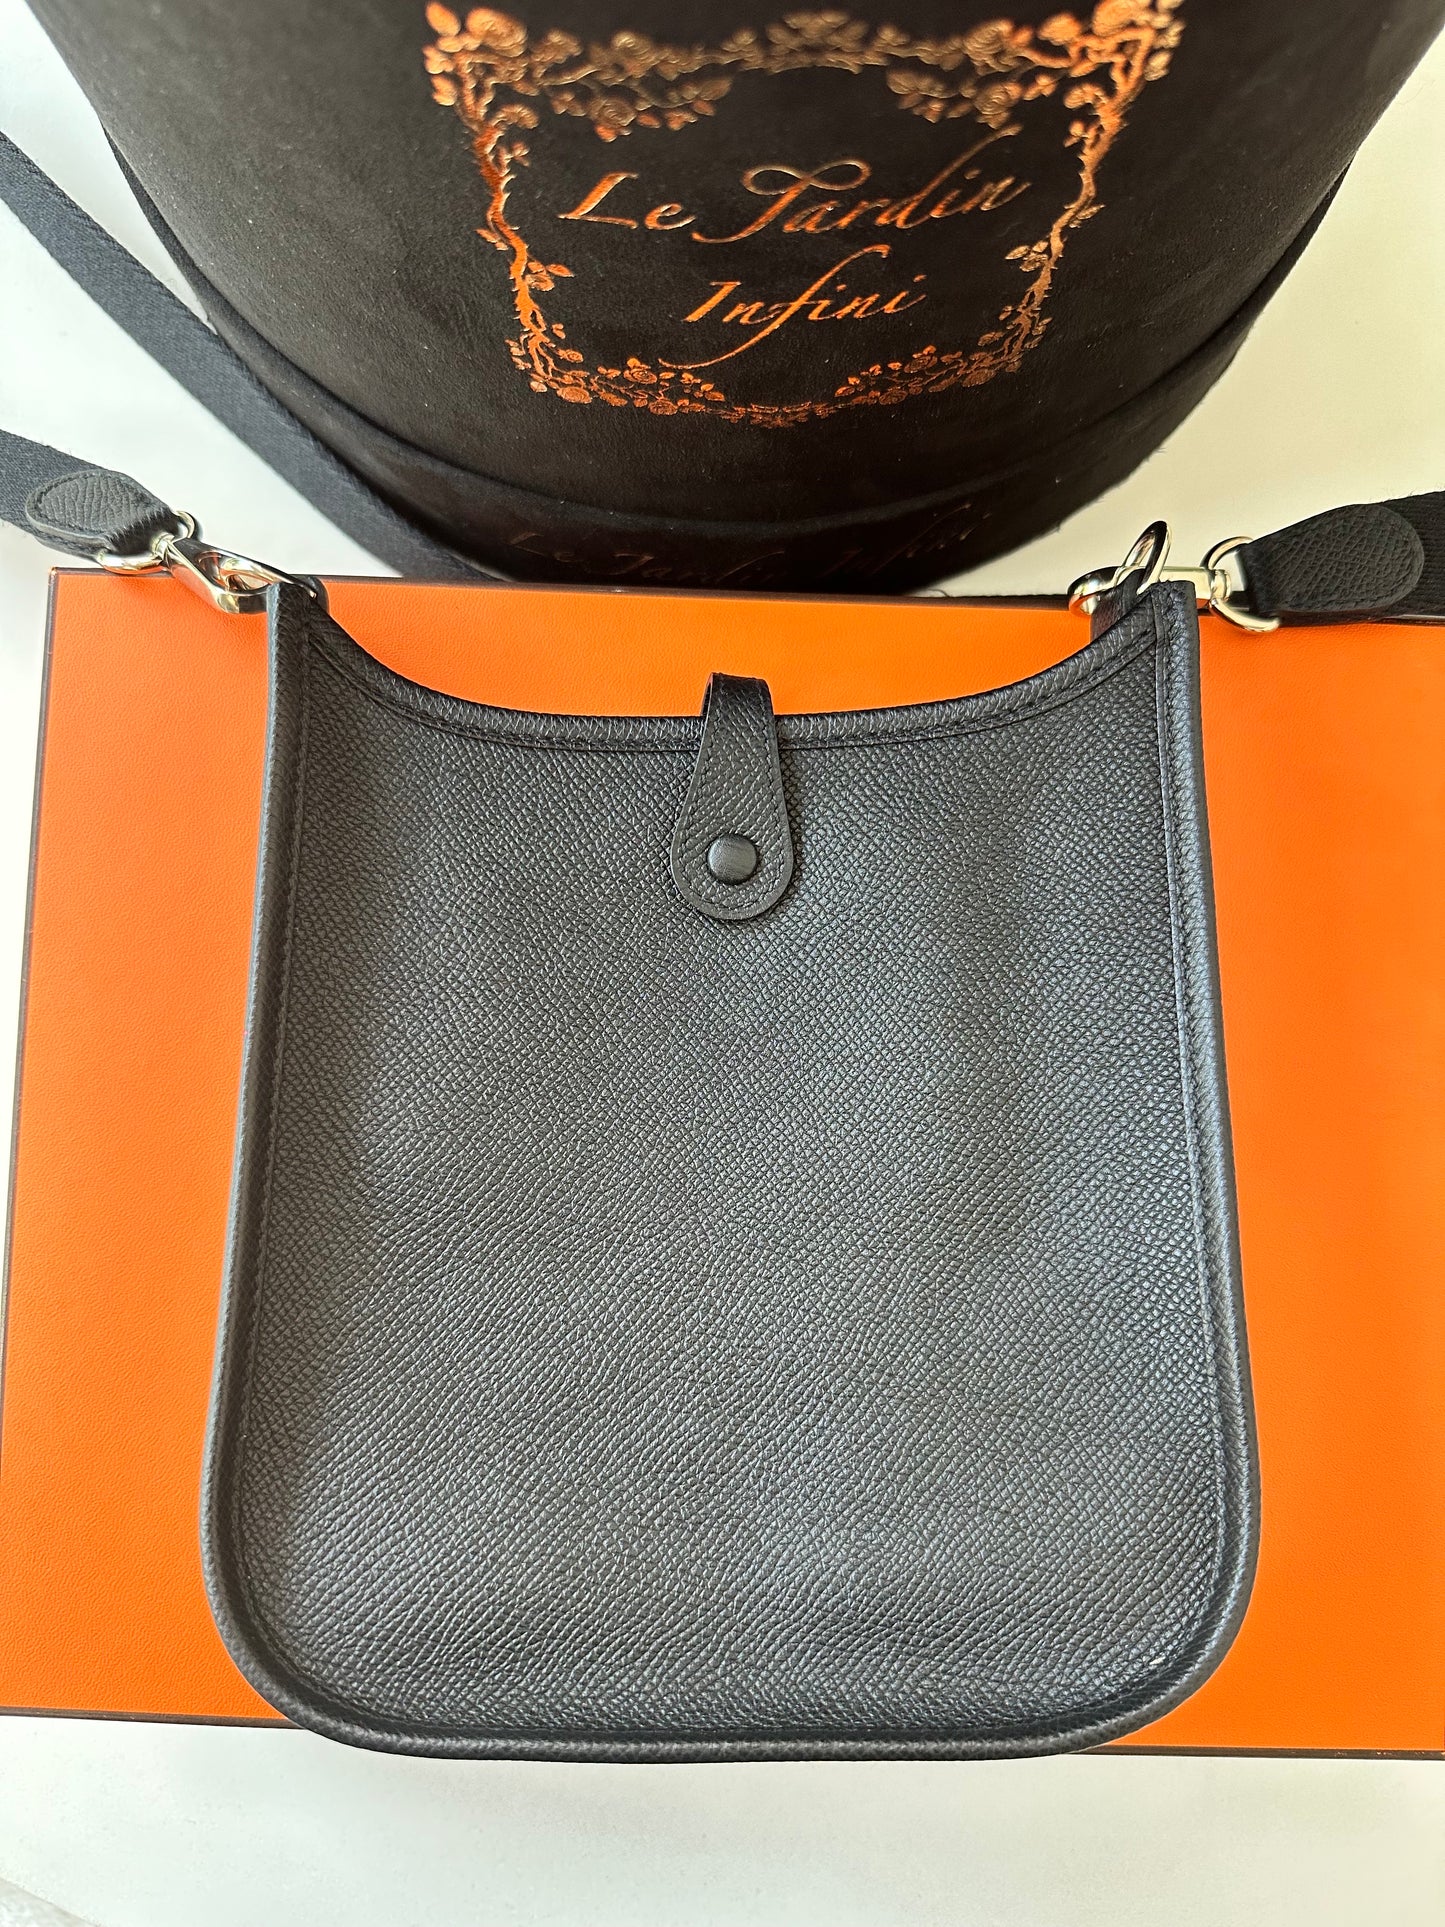 Hermes Evelyne TPM 16 Black Noir Epsom Leather Mini PHW Crossbody Handbag Bag Pre-Owned